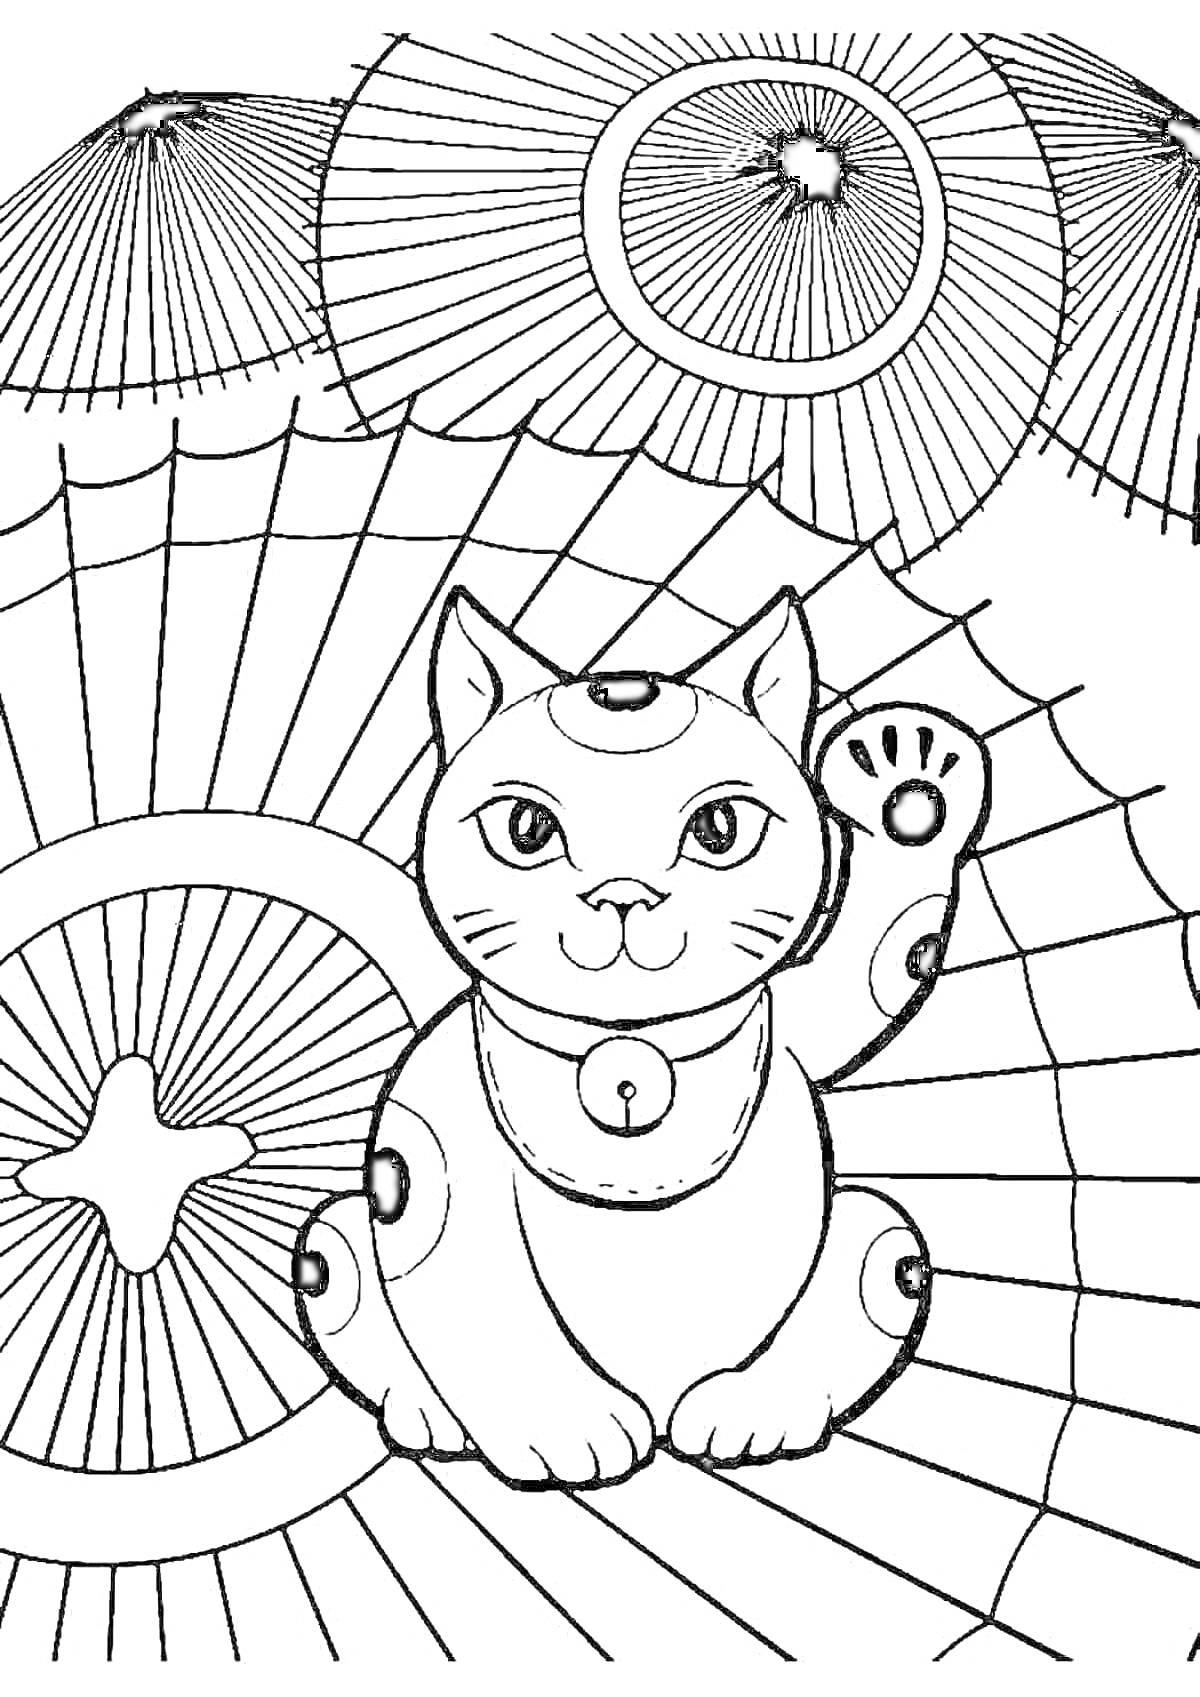 Раскраска Китайский котик Манэки-нэко среди традиционных зонтов